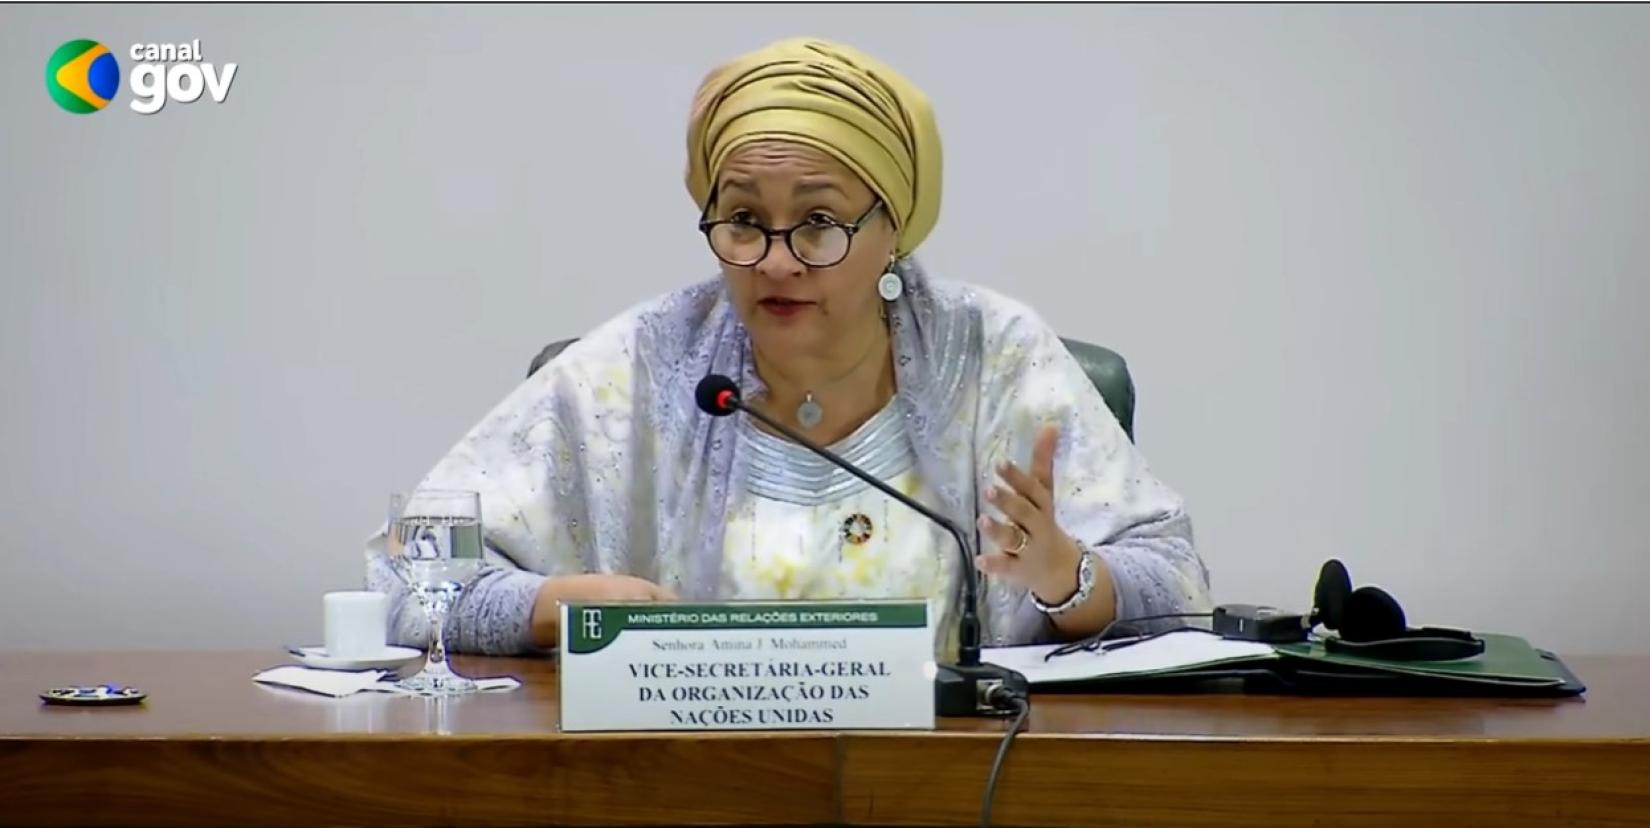 A vice-secretária-geral da ONU, Amina Mohammed, participa de evento no Ministério das Relações Exteriores do Brasil.